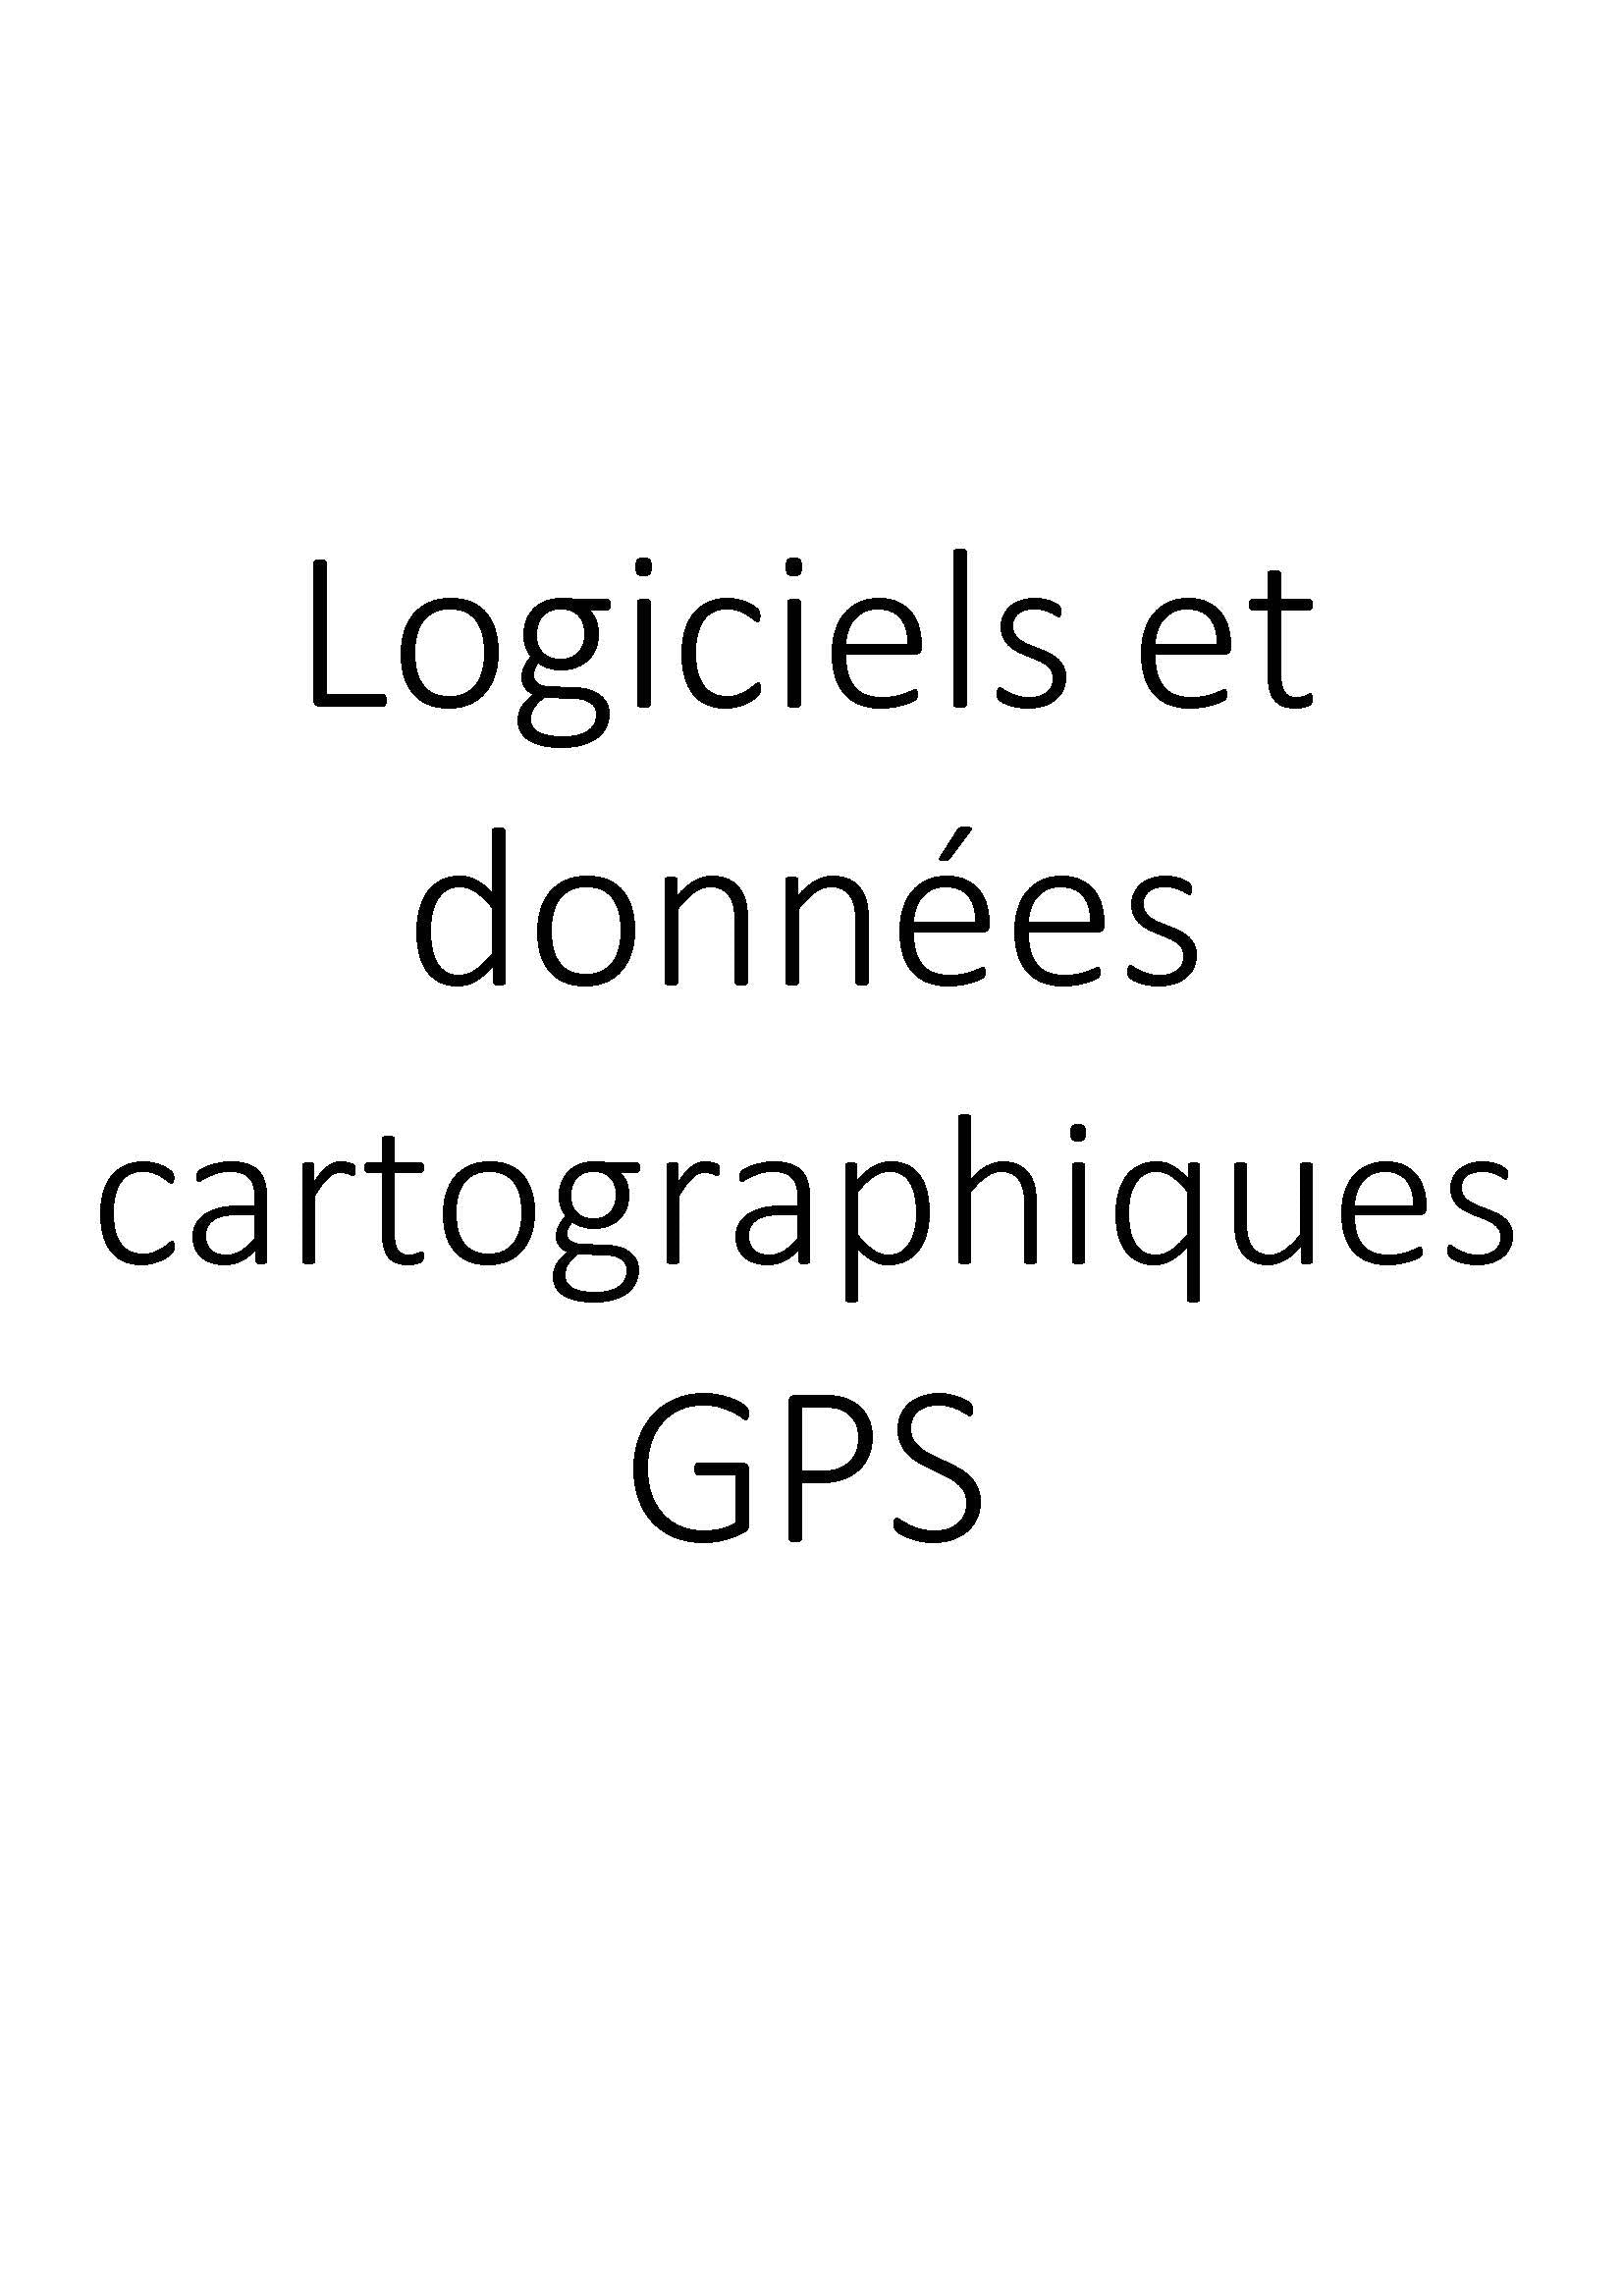 Logiciels et données cartographiques GPS clicktofournisseur.com